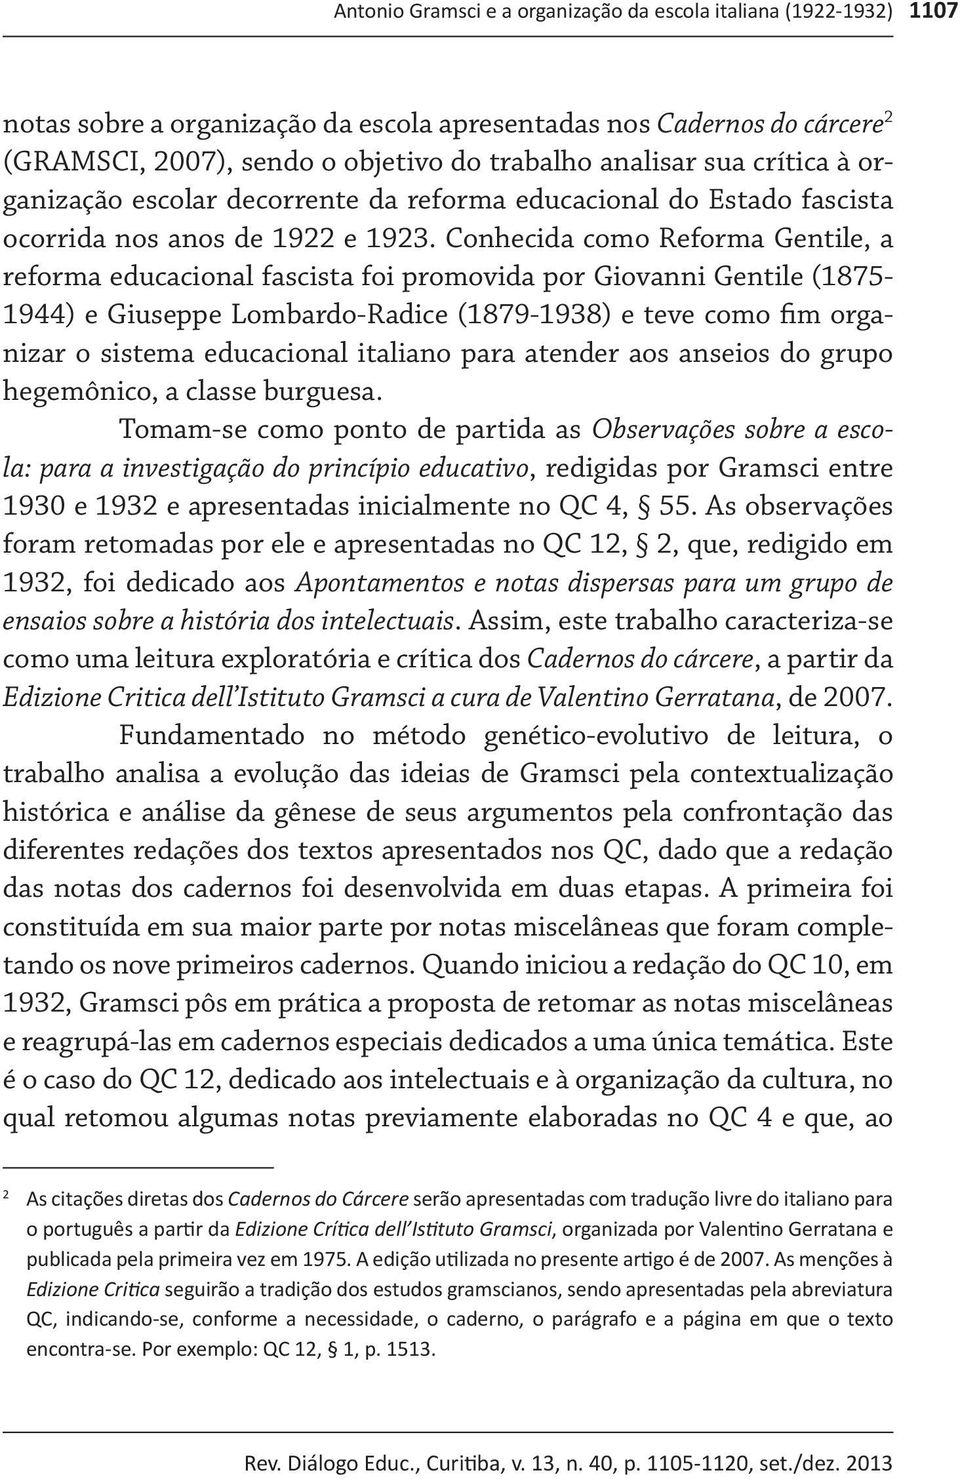 Conhecida como Reforma Gentile, a reforma educacional fascista foi promovida por Giovanni Gentile (1875-1944) e Giuseppe Lombardo-Radice (1879-1938) e teve como fim organizar o sistema educacional